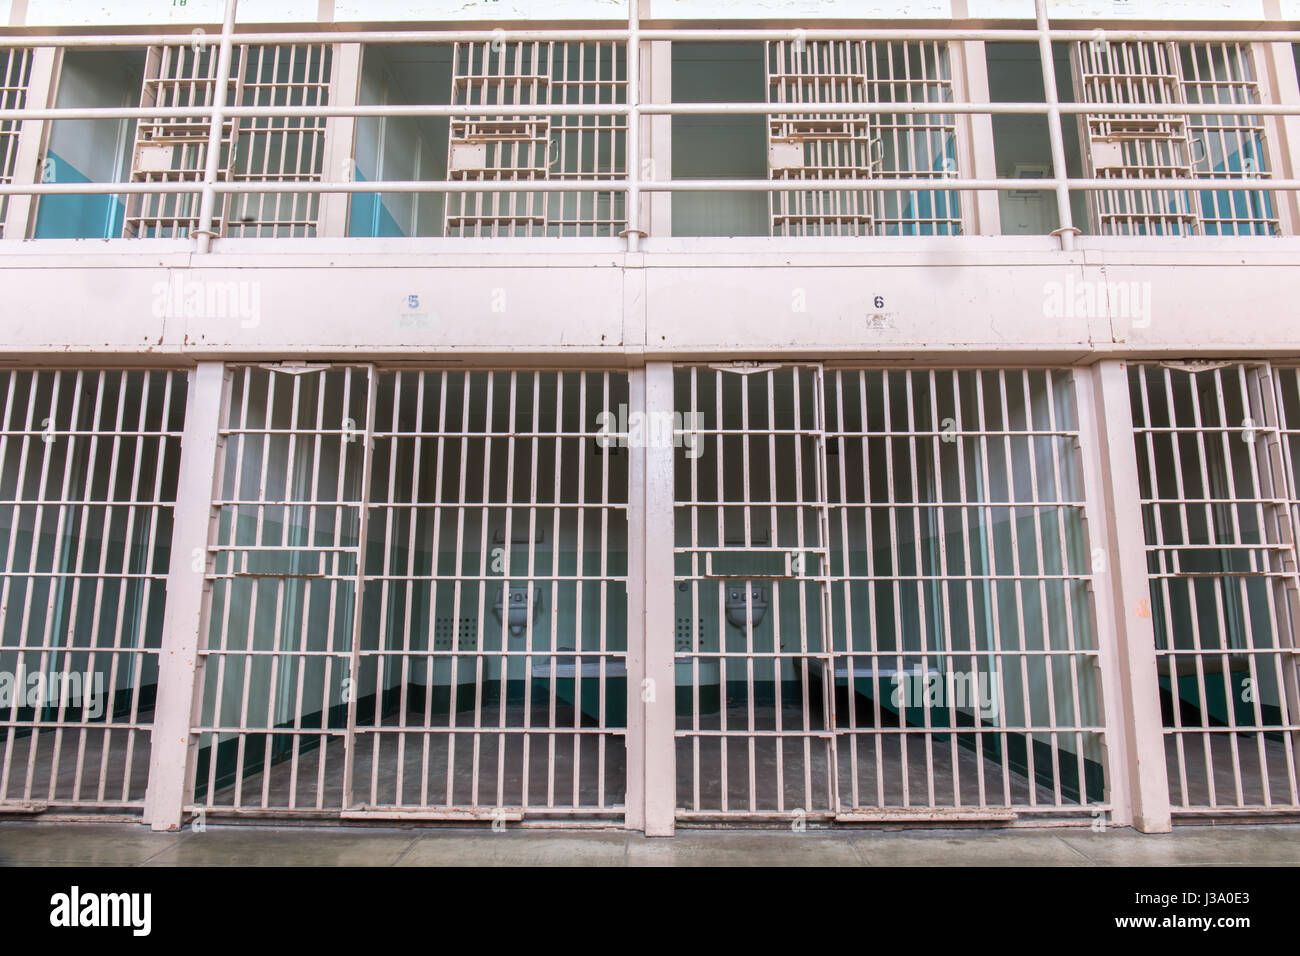 San Francisco, California, Vereinigte Staaten von Amerika - 30. April 2017: Multi-level Zellen des Gefängnis Alcatraz. Stockfoto